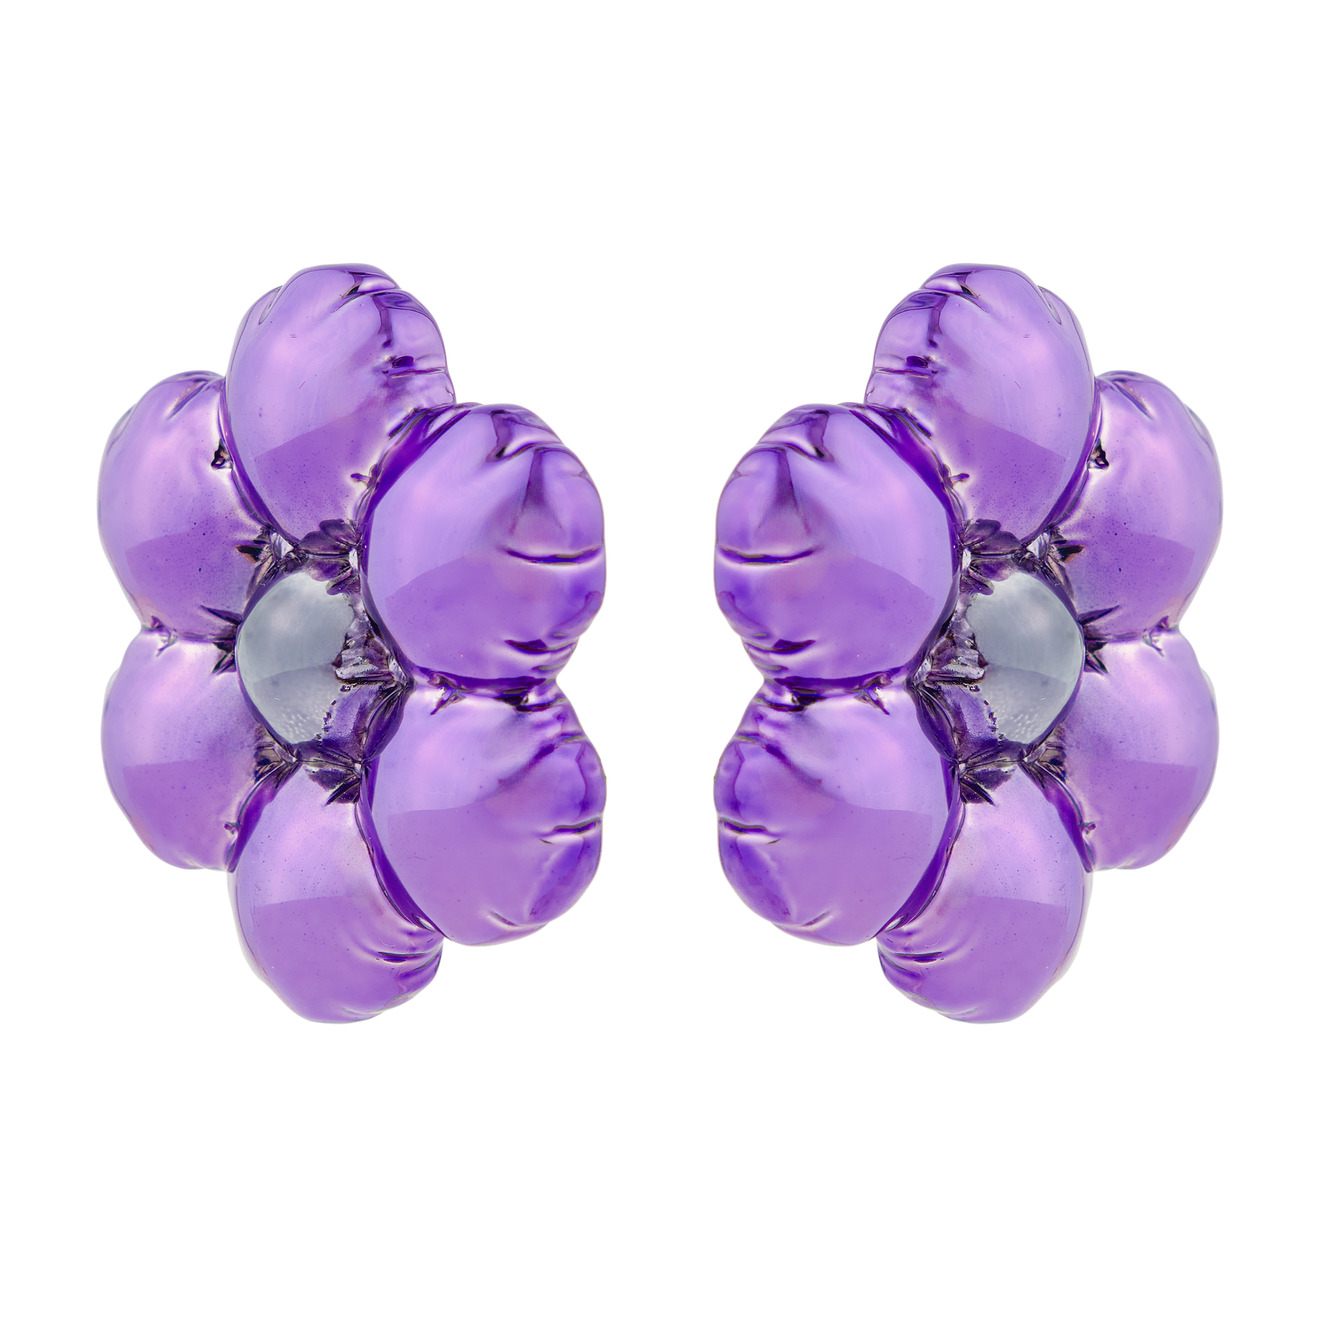 marni серебристые серьги клипсы с шарообразными цветками Marni Фиолетовые серьги-клипсы с шарообразными цветками